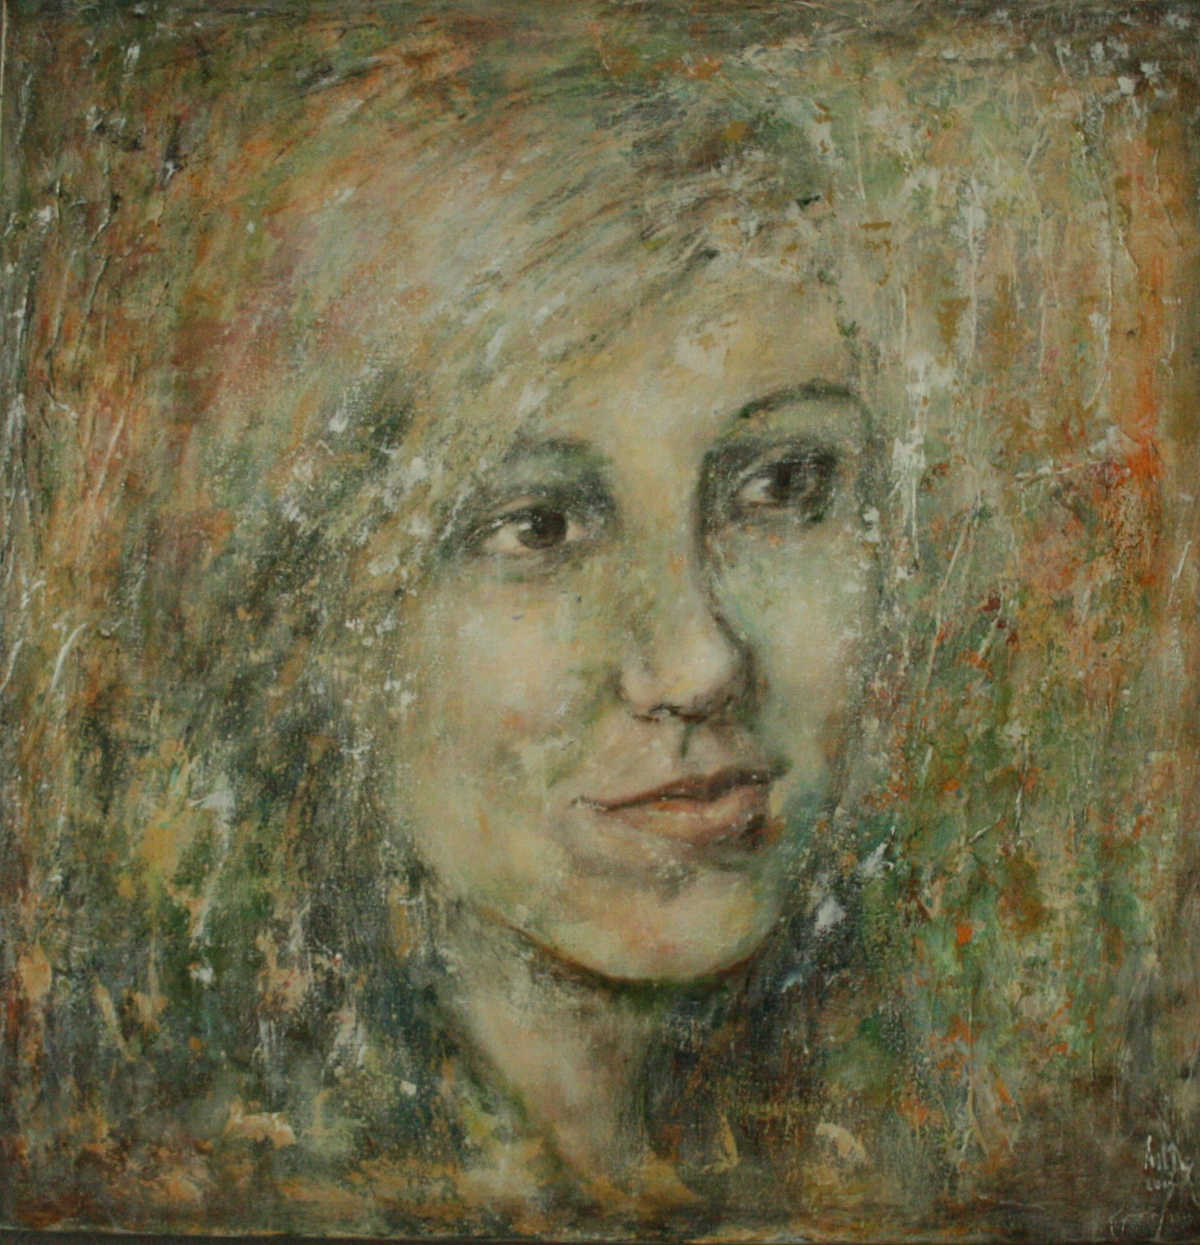 Anne de meij; portretschilder